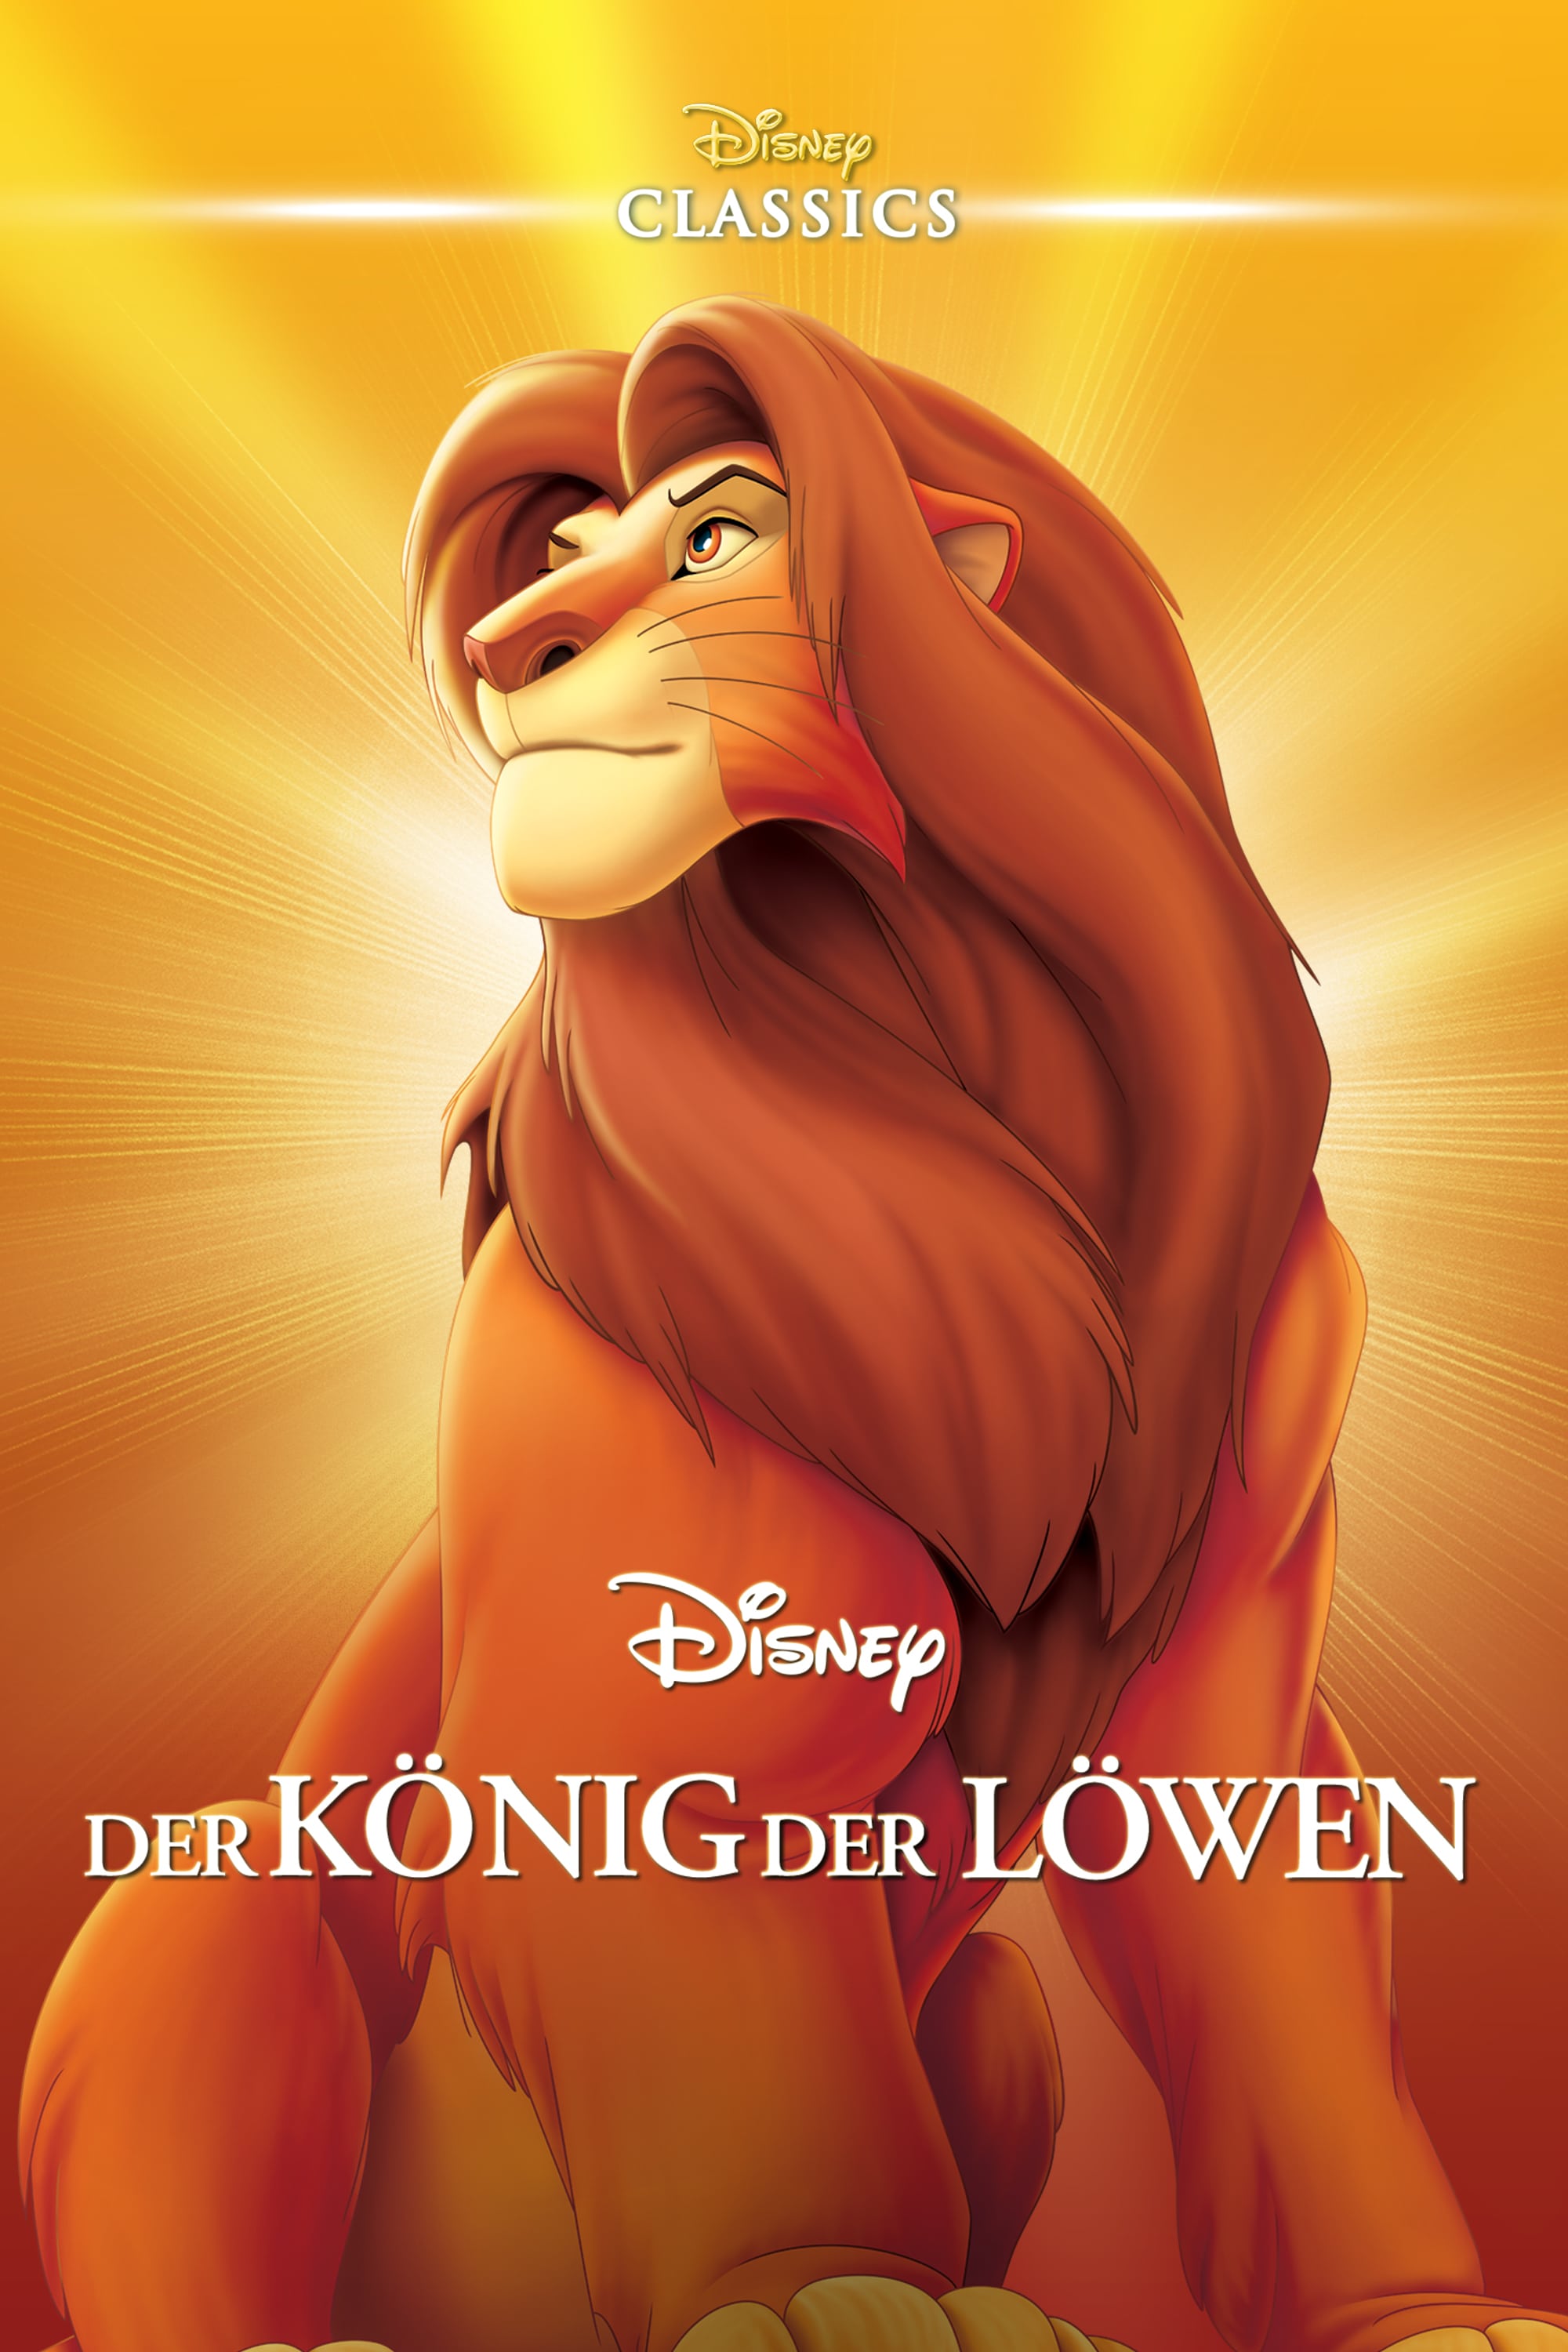 Plakat von "Der König der Löwen"